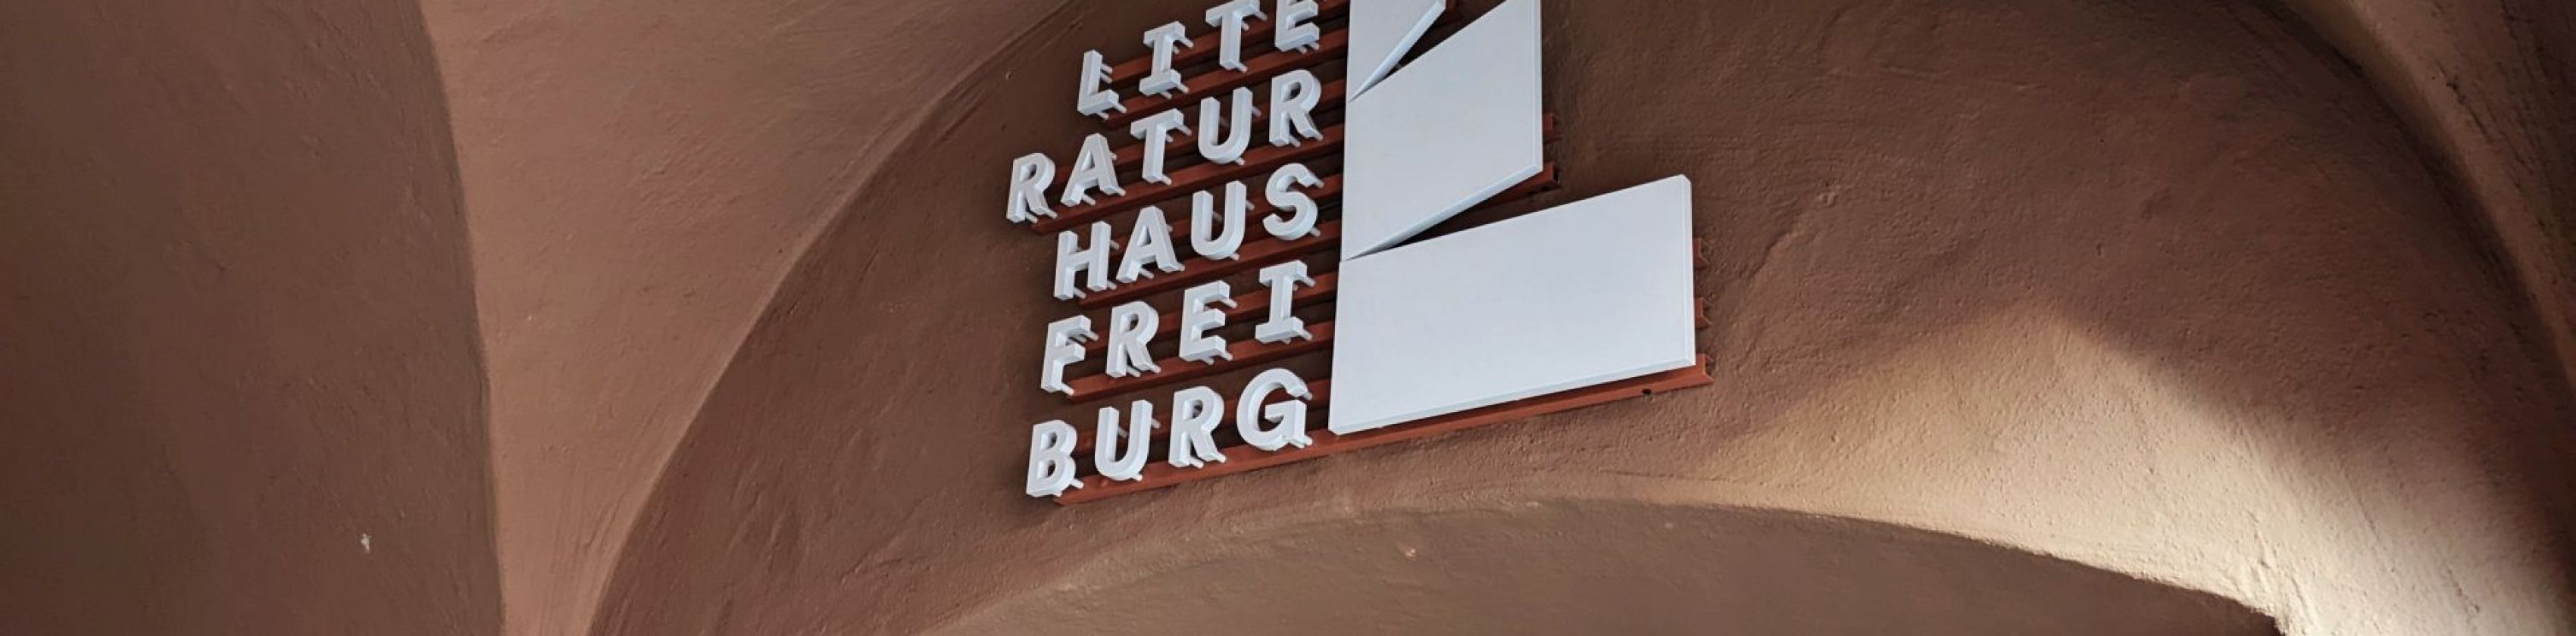 Literaturhaus Freiburg_FWTM-Vögtle, © FWTM-Vögtle